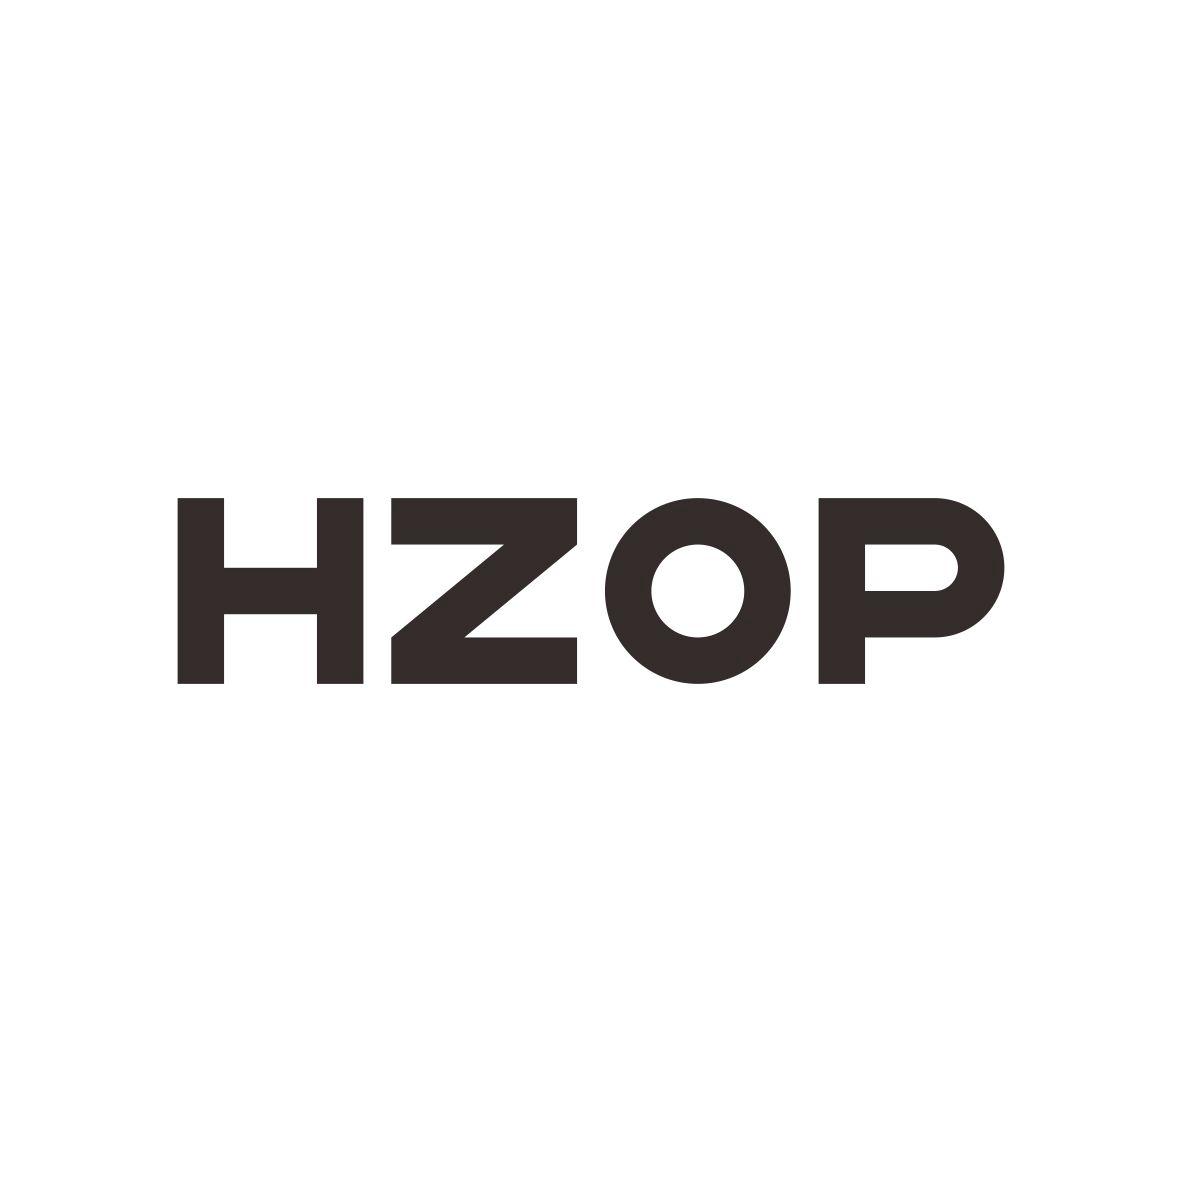 HZOP商标图片